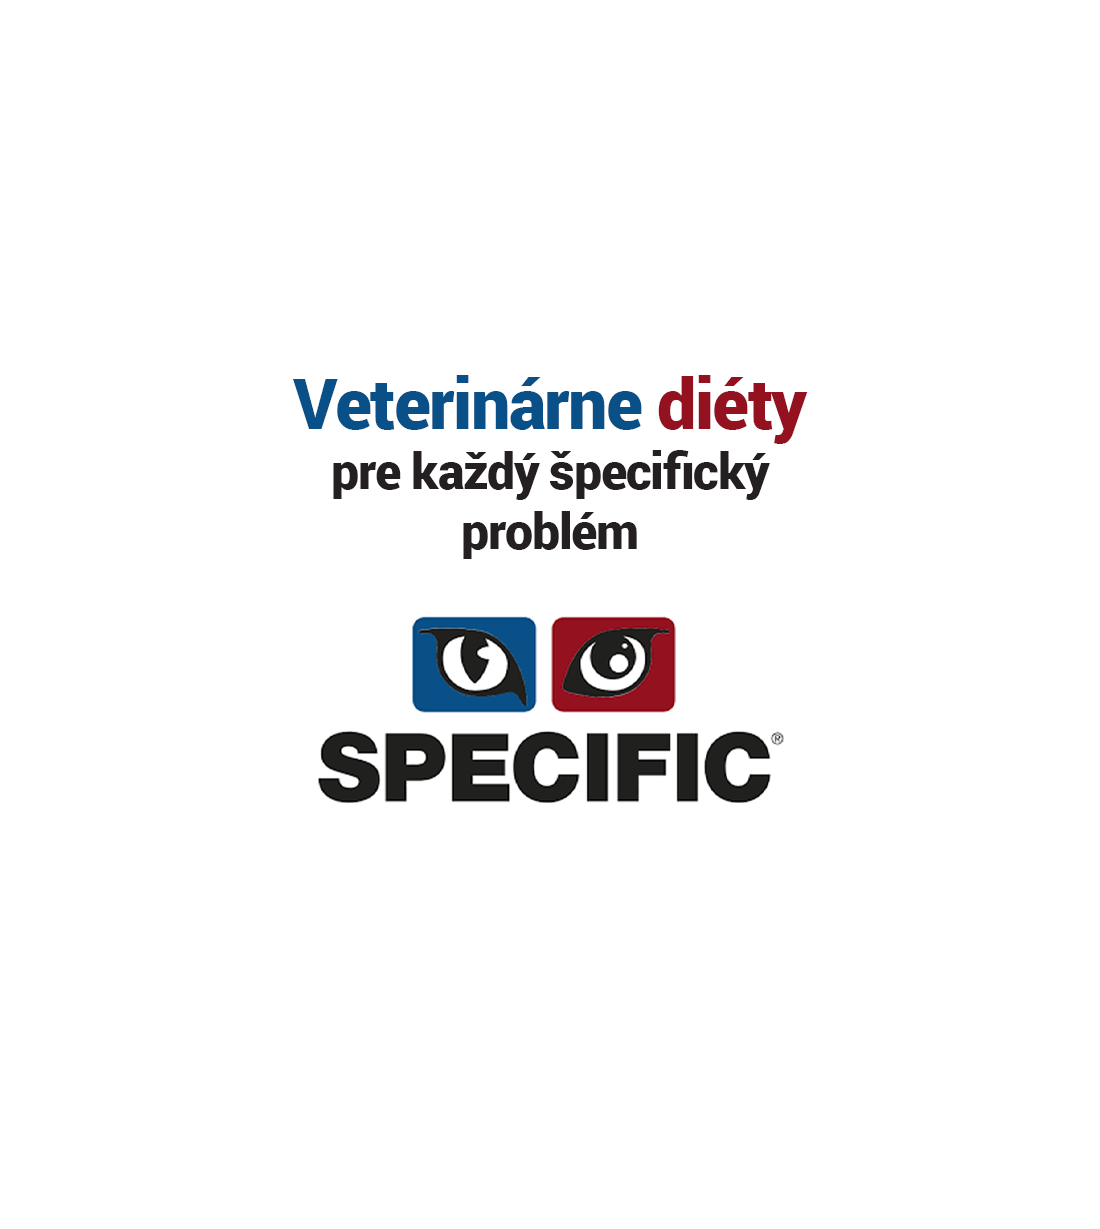 SPECIFIC – veterinárne diéty pre špecifický problém